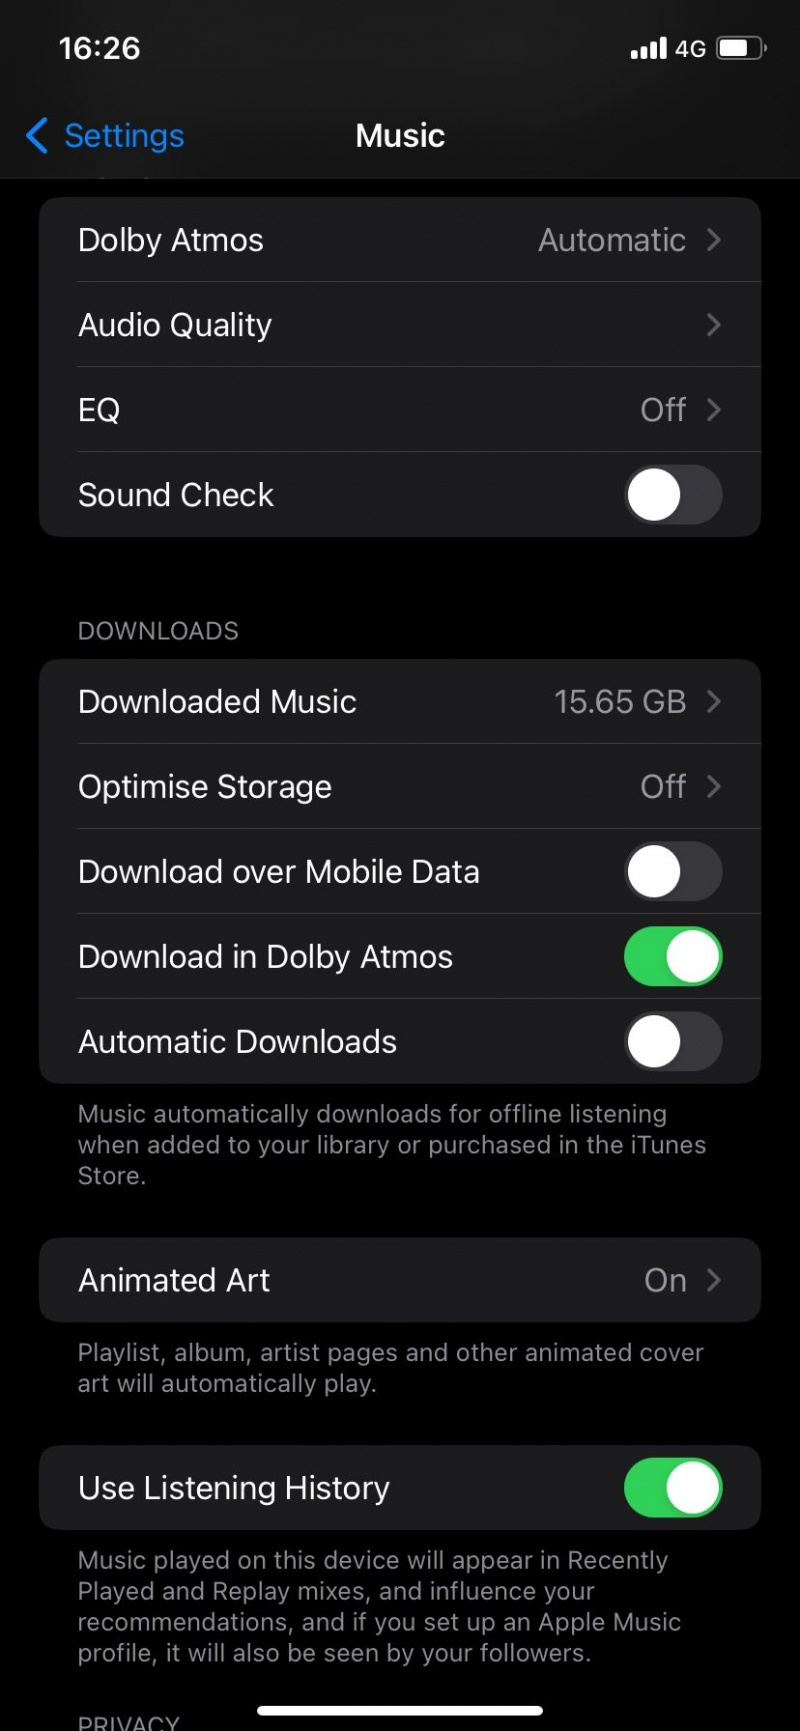   Téléchargement sur données mobiles désactivé sur Apple Music